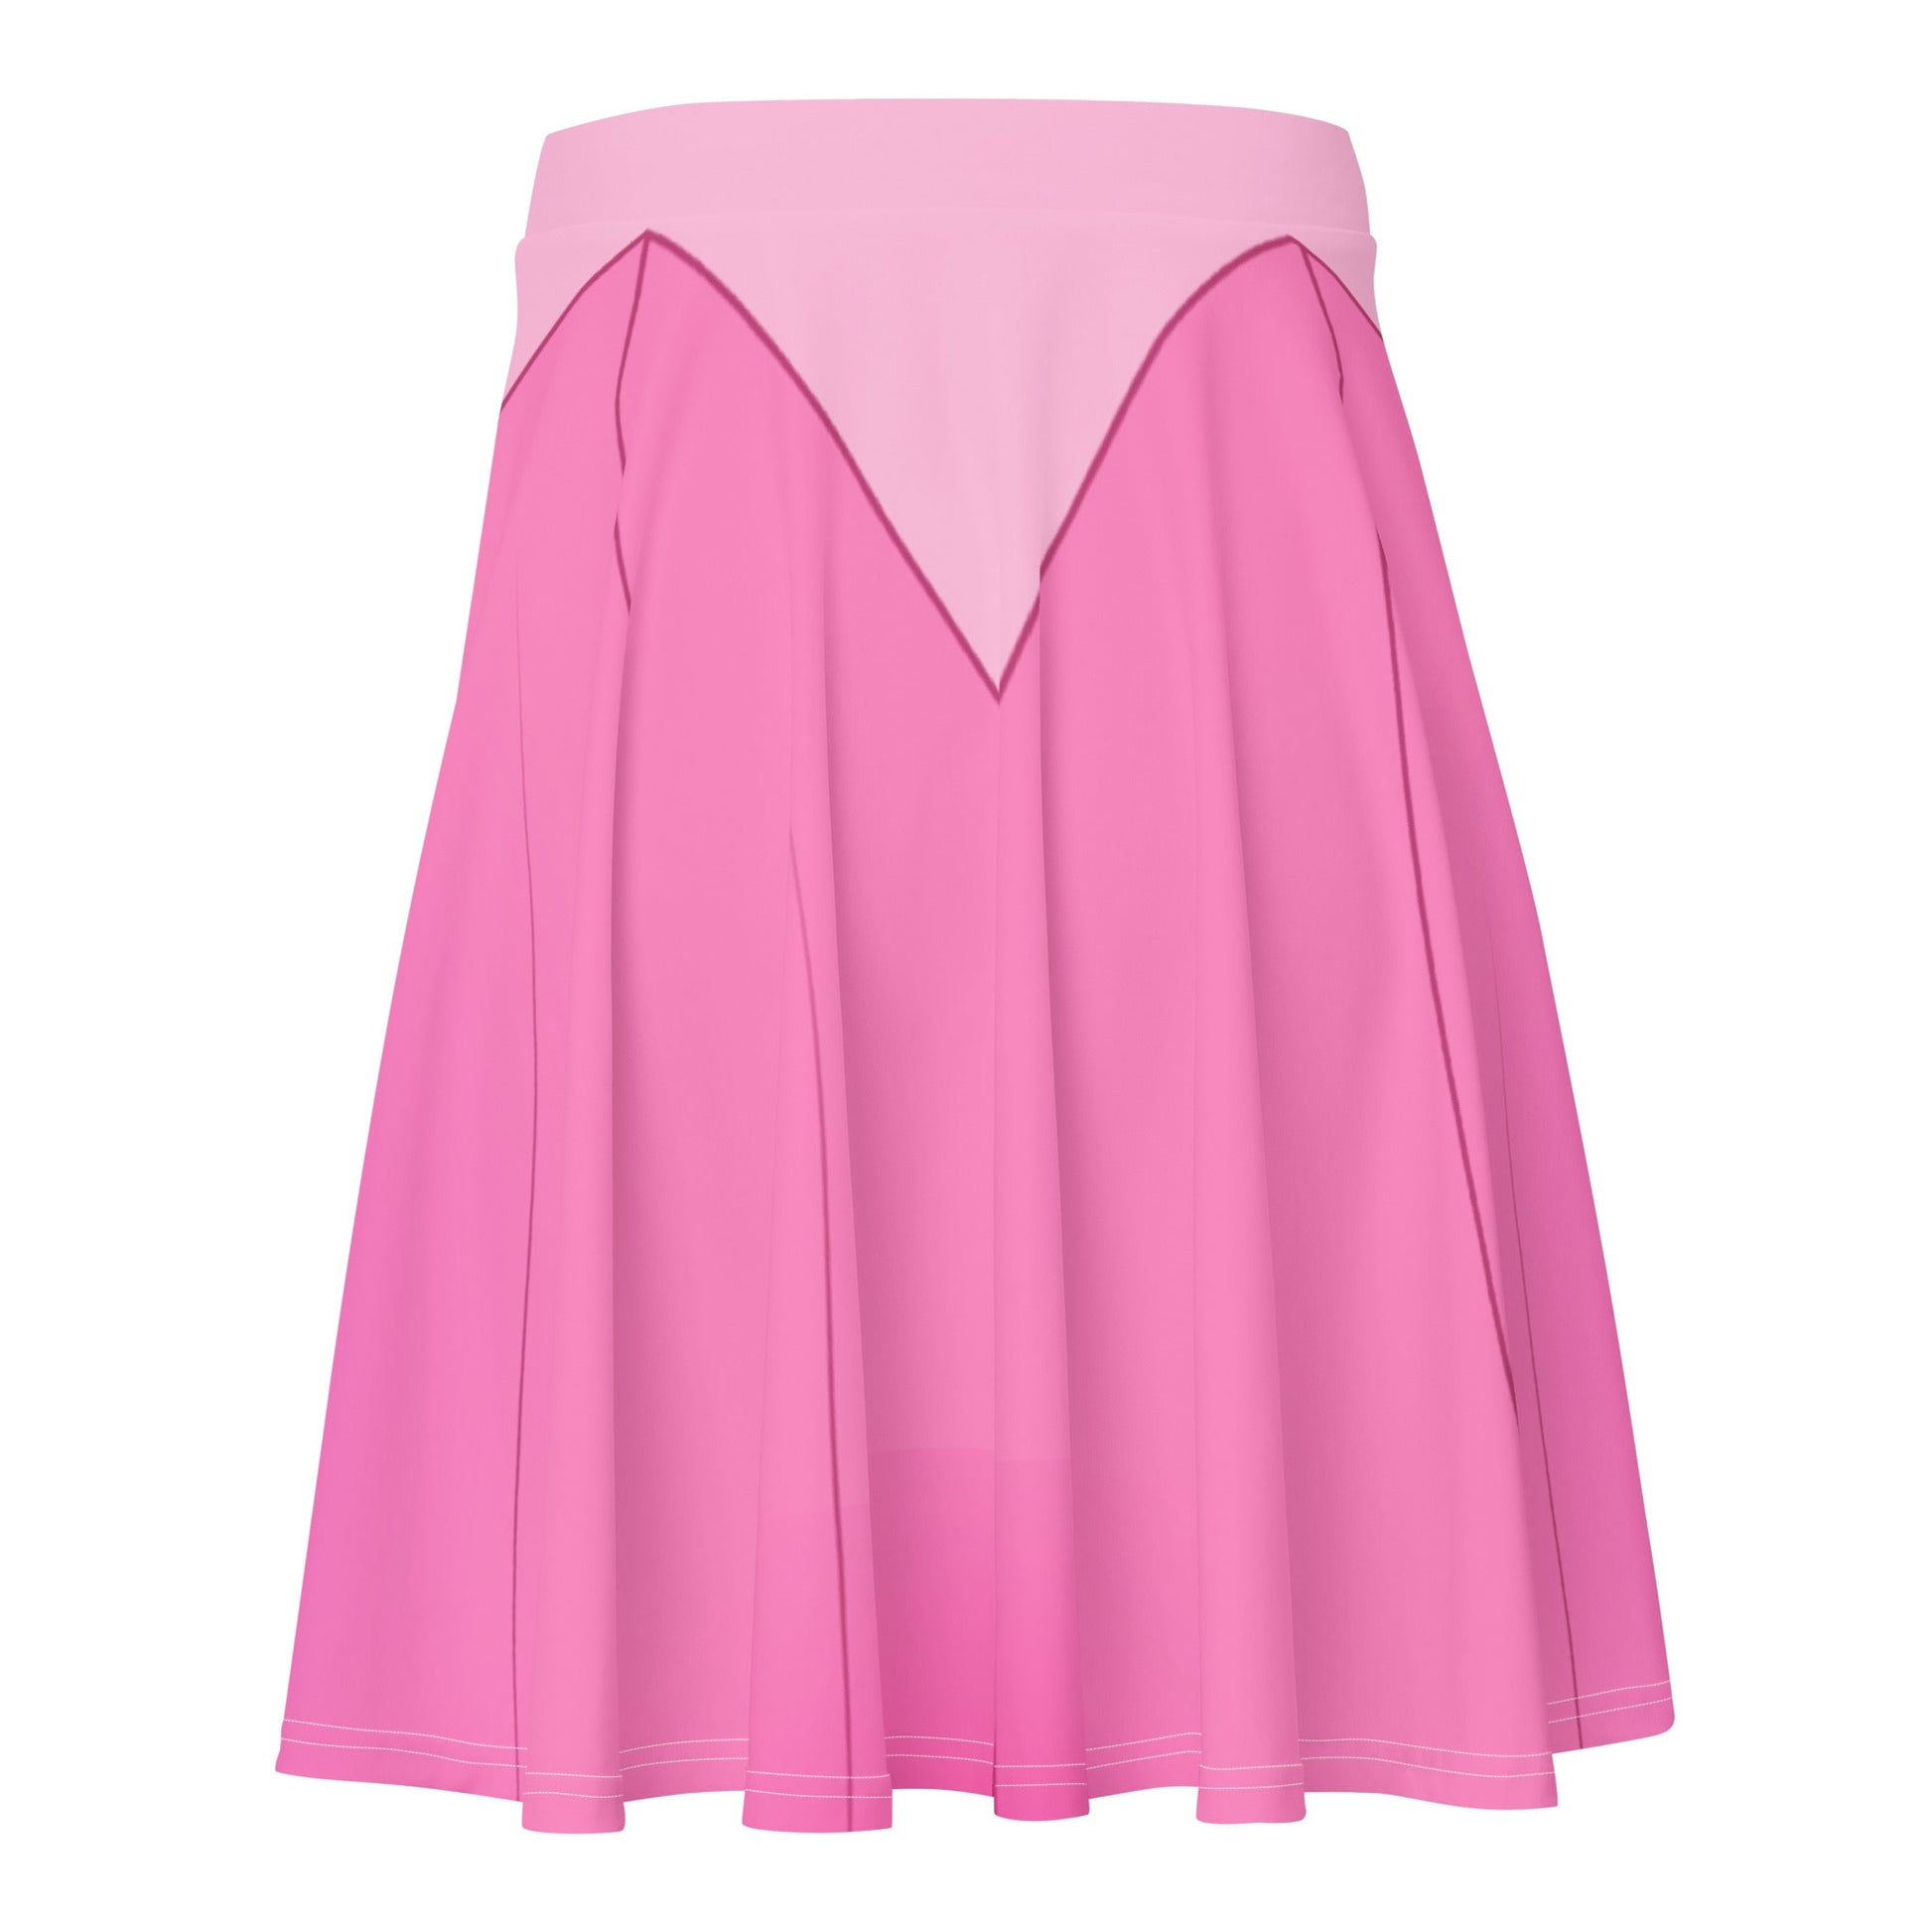 Sleeping Princess Skater Skirt aurorabriar rosecoordinating styles#tag4##tag5##tag6#